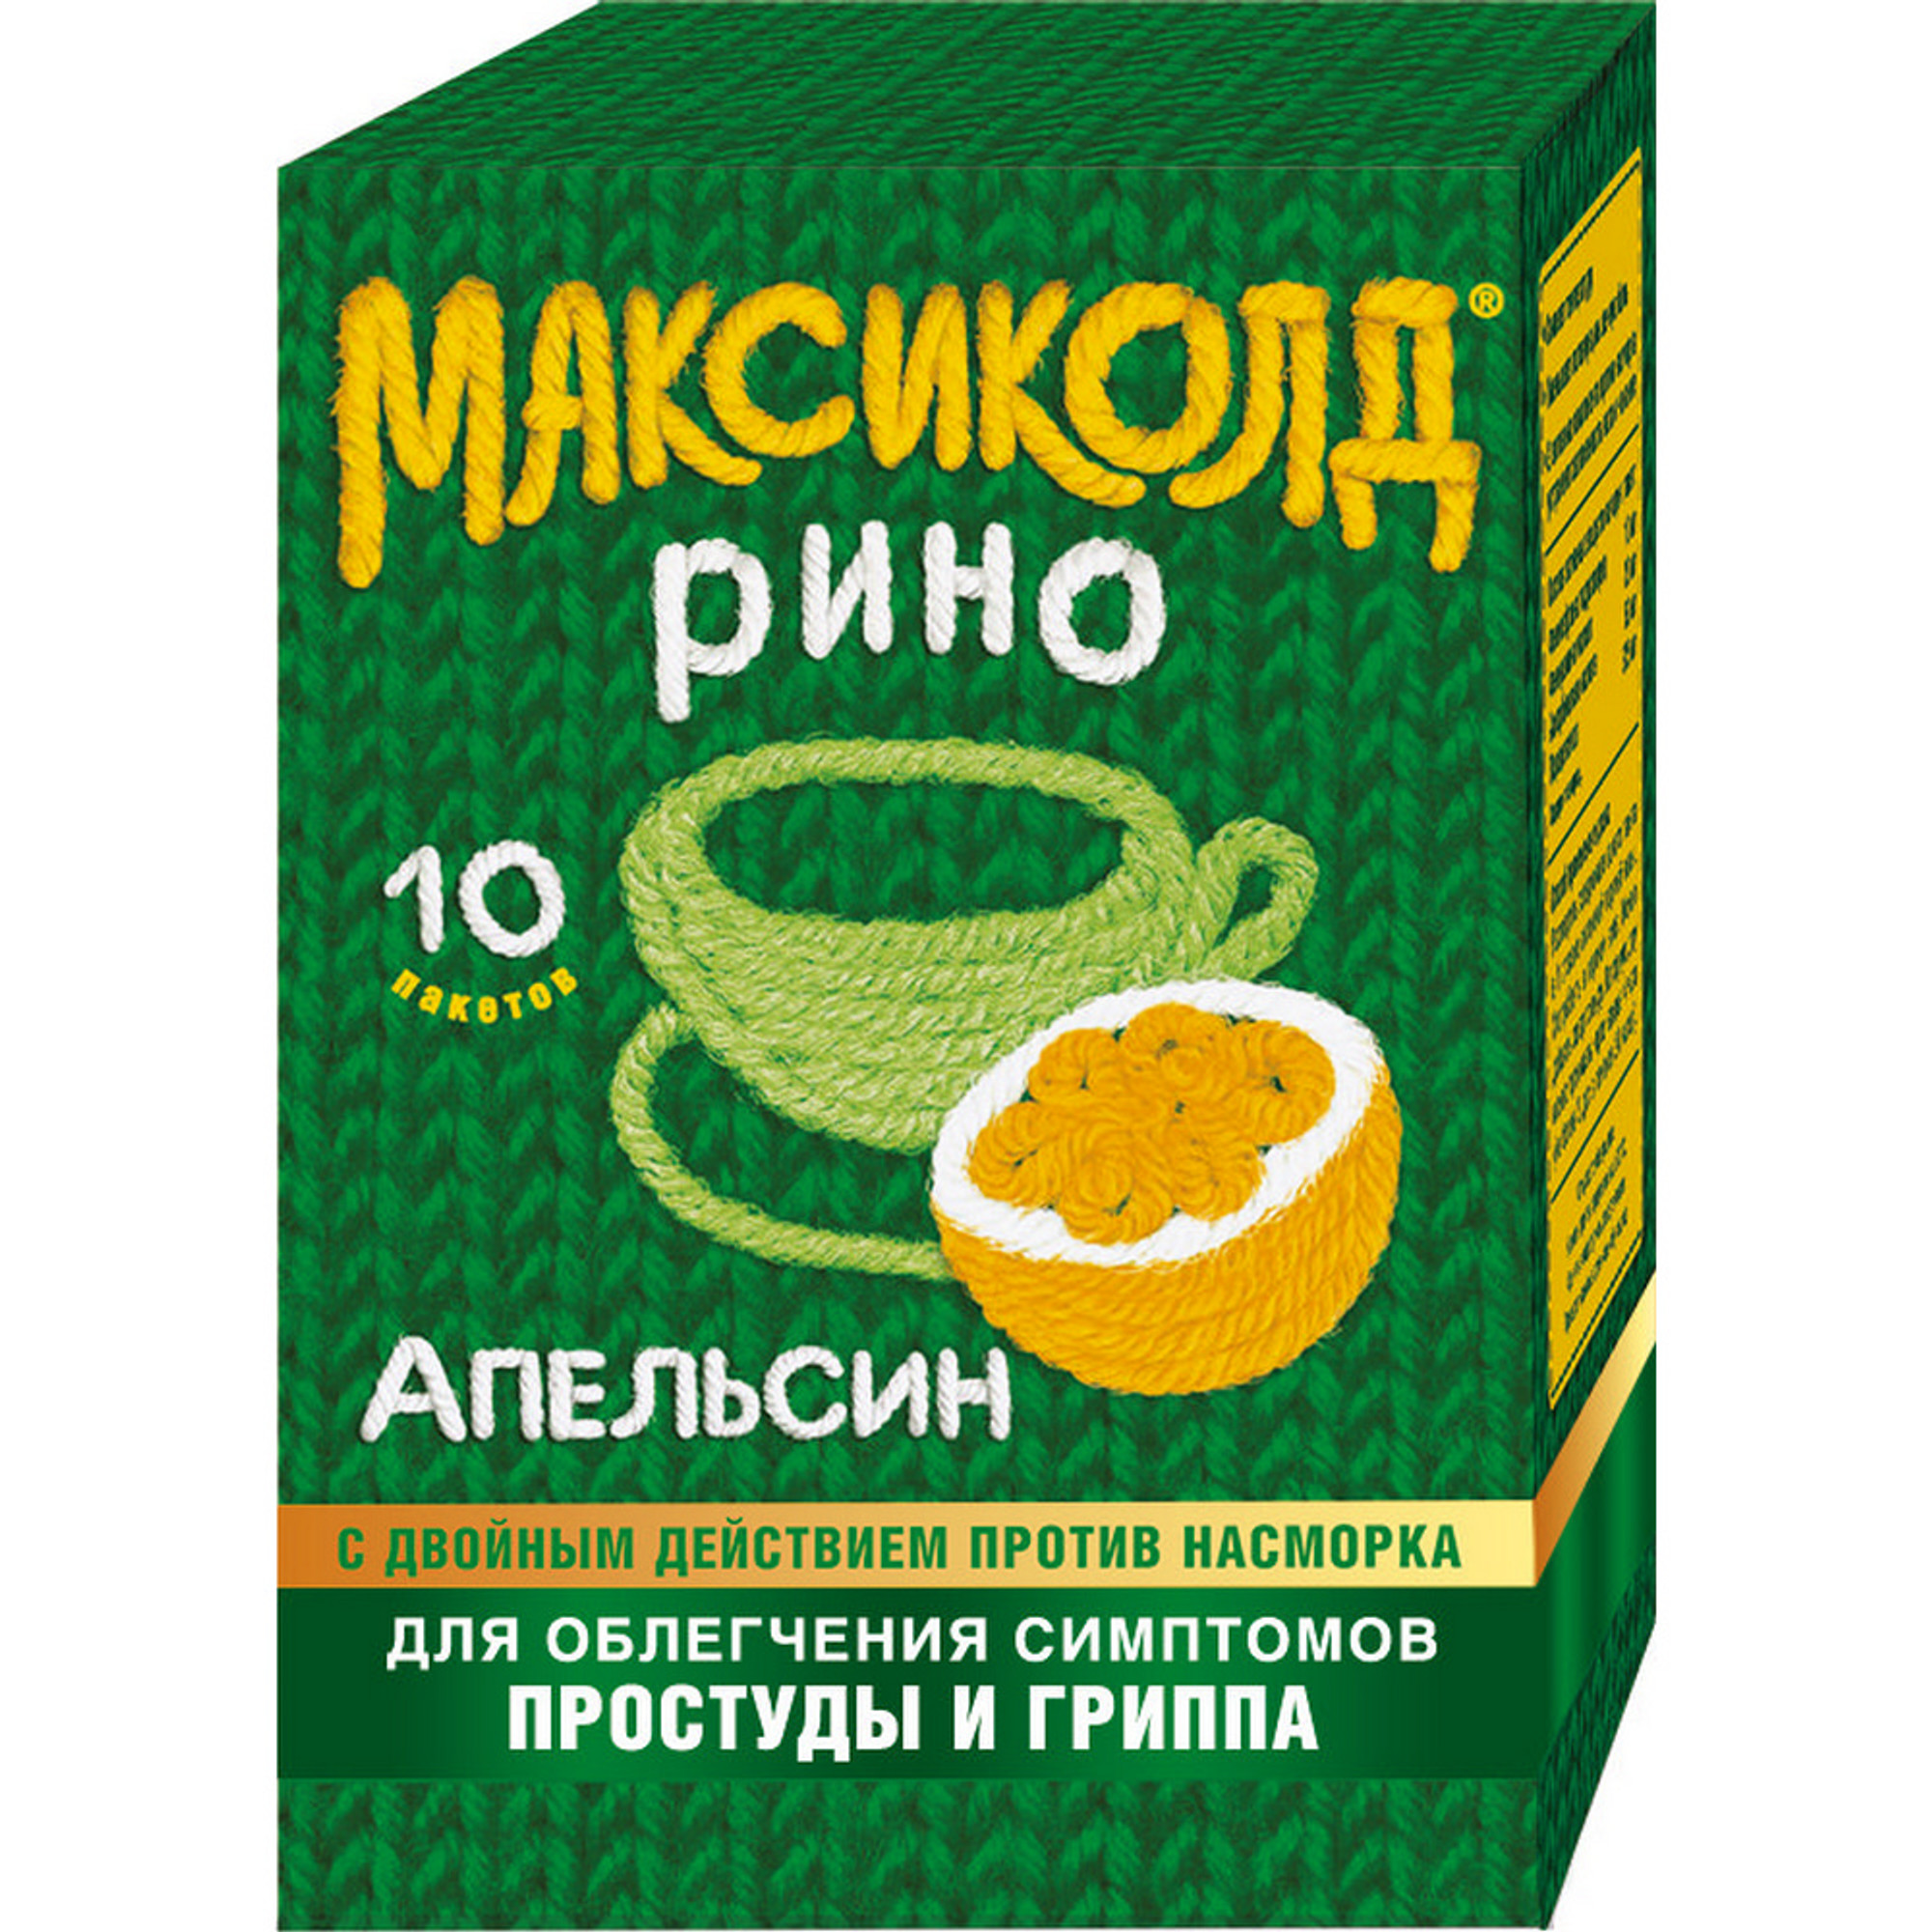 Максиколд Рино, порошок (апельсин), пакетики 15 г, 10 шт. максиколд рино пакетики 15г 10 лимон